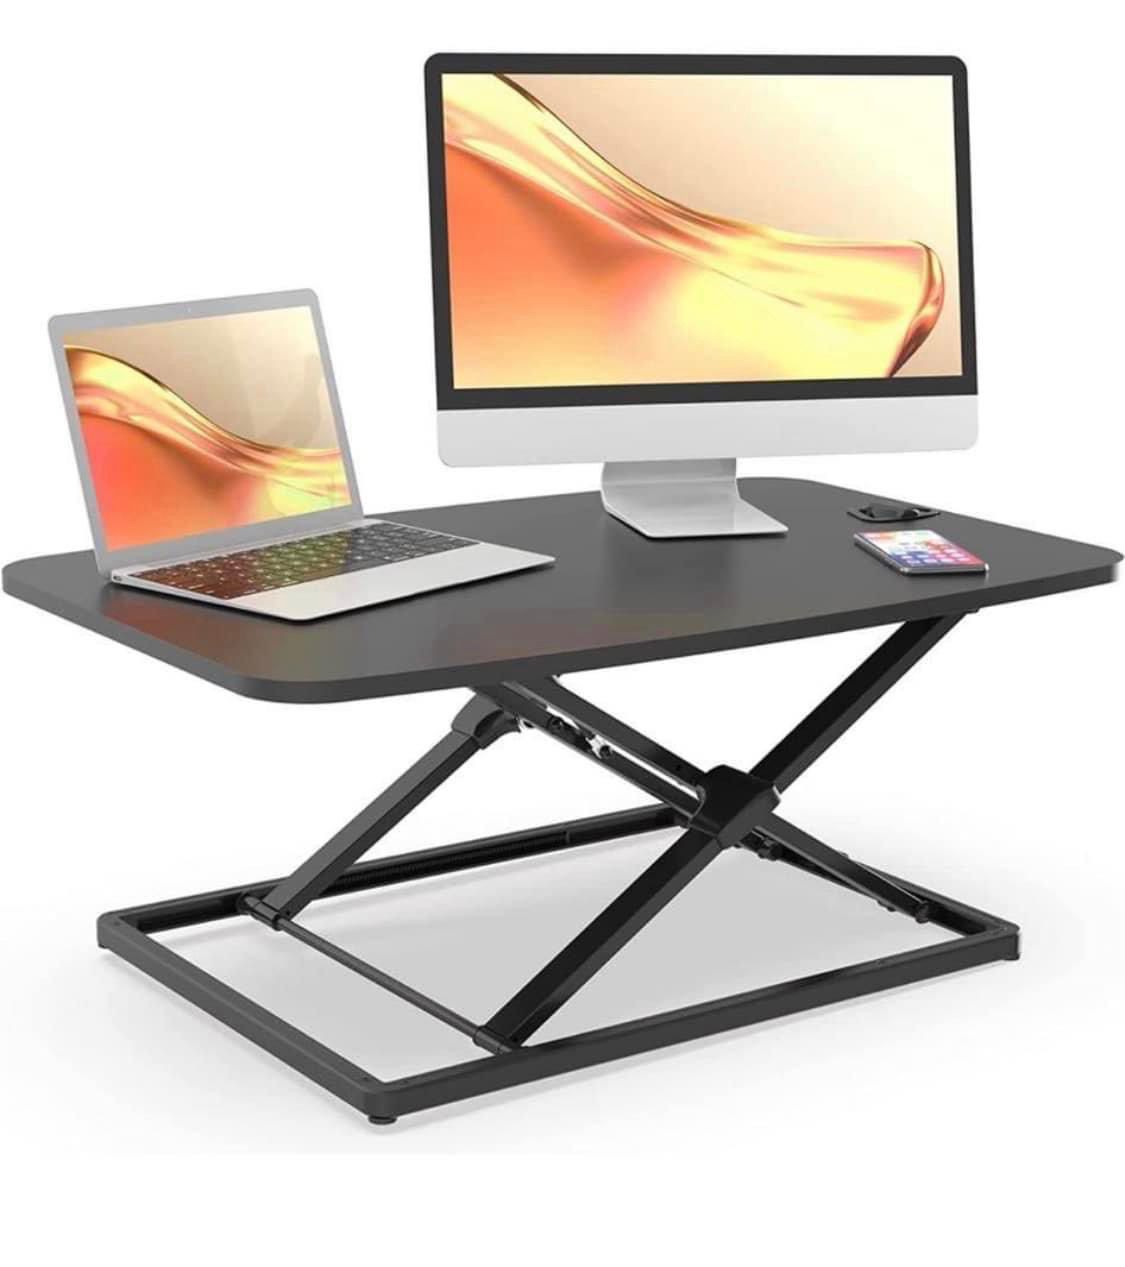 25" Standing Desk Converter Laptop Stand Up Desk Riser Table Adjustable